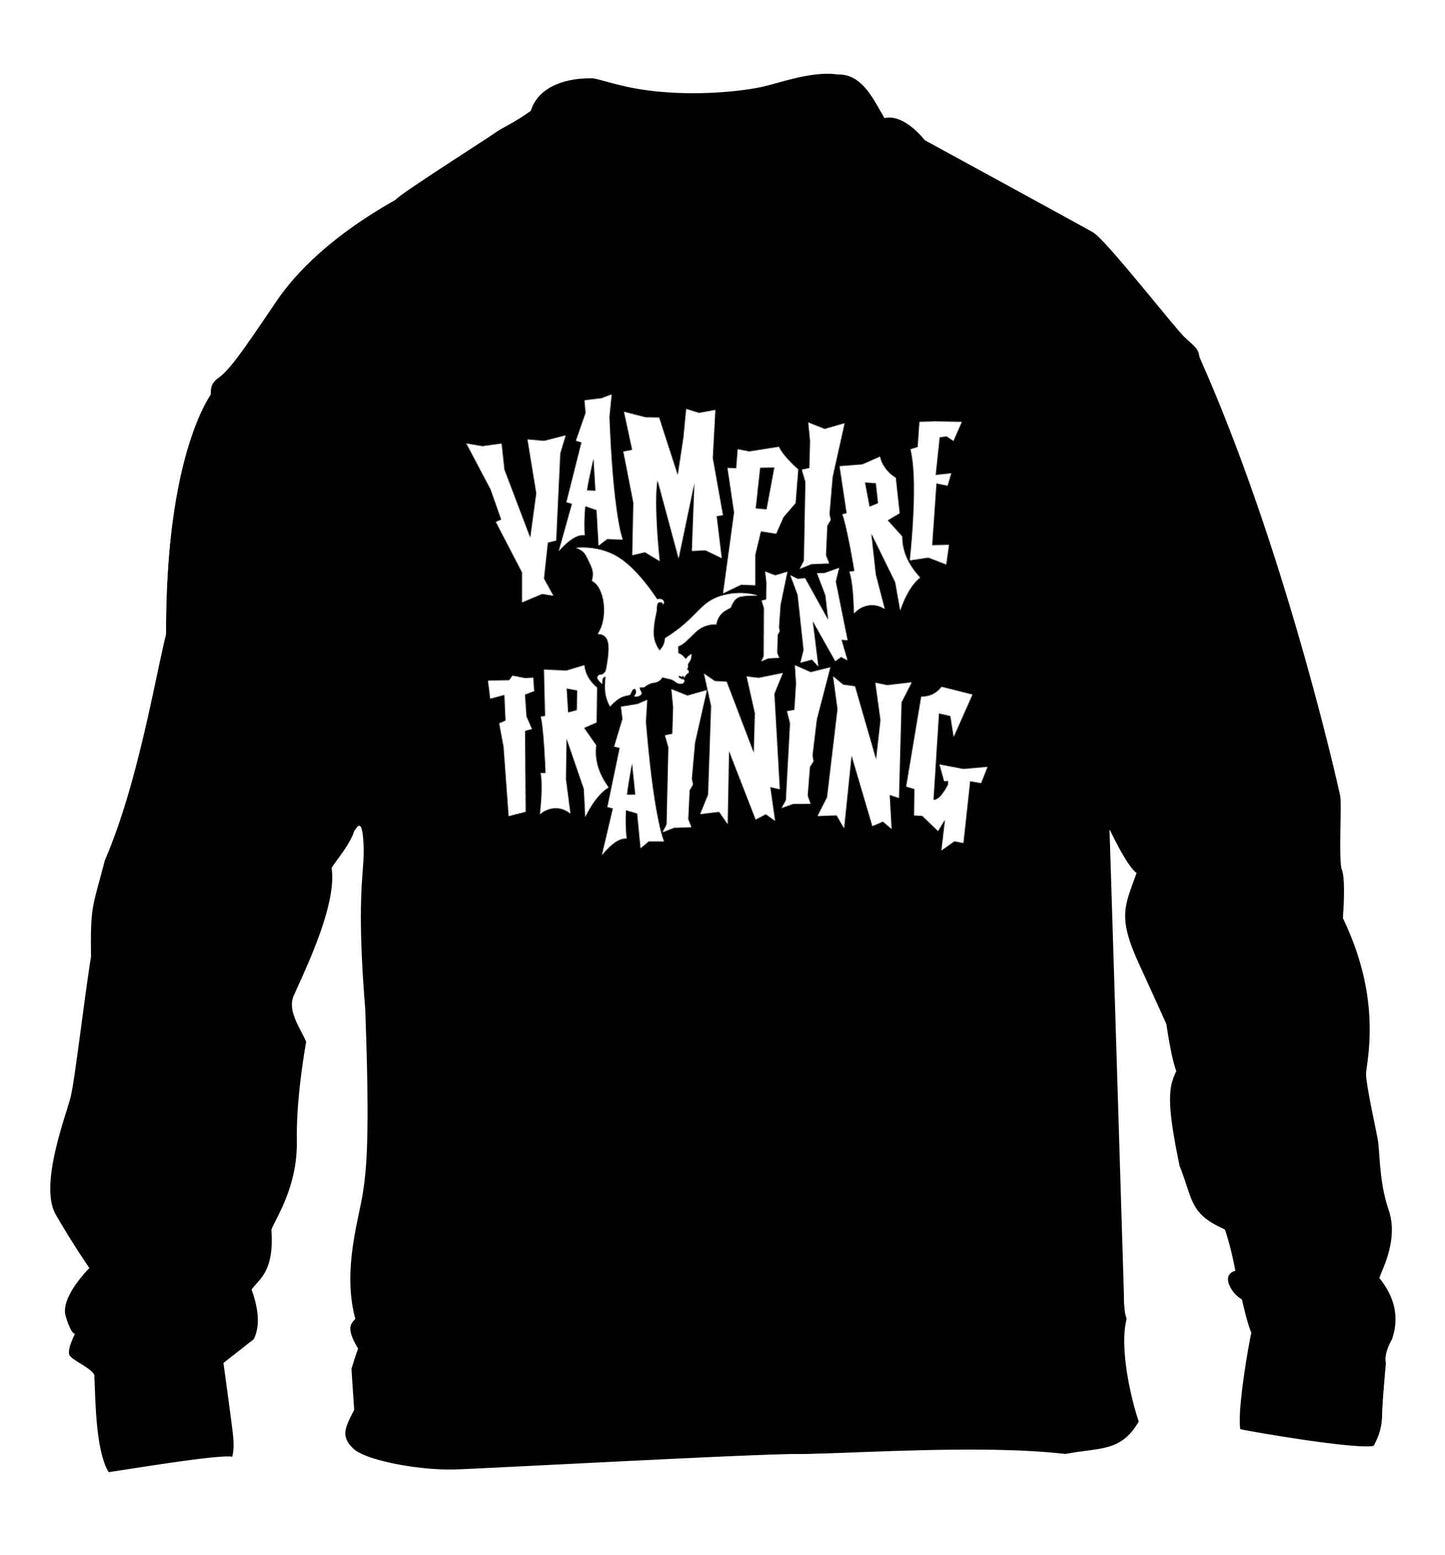 Vampire in training children's black sweater 12-13 Years